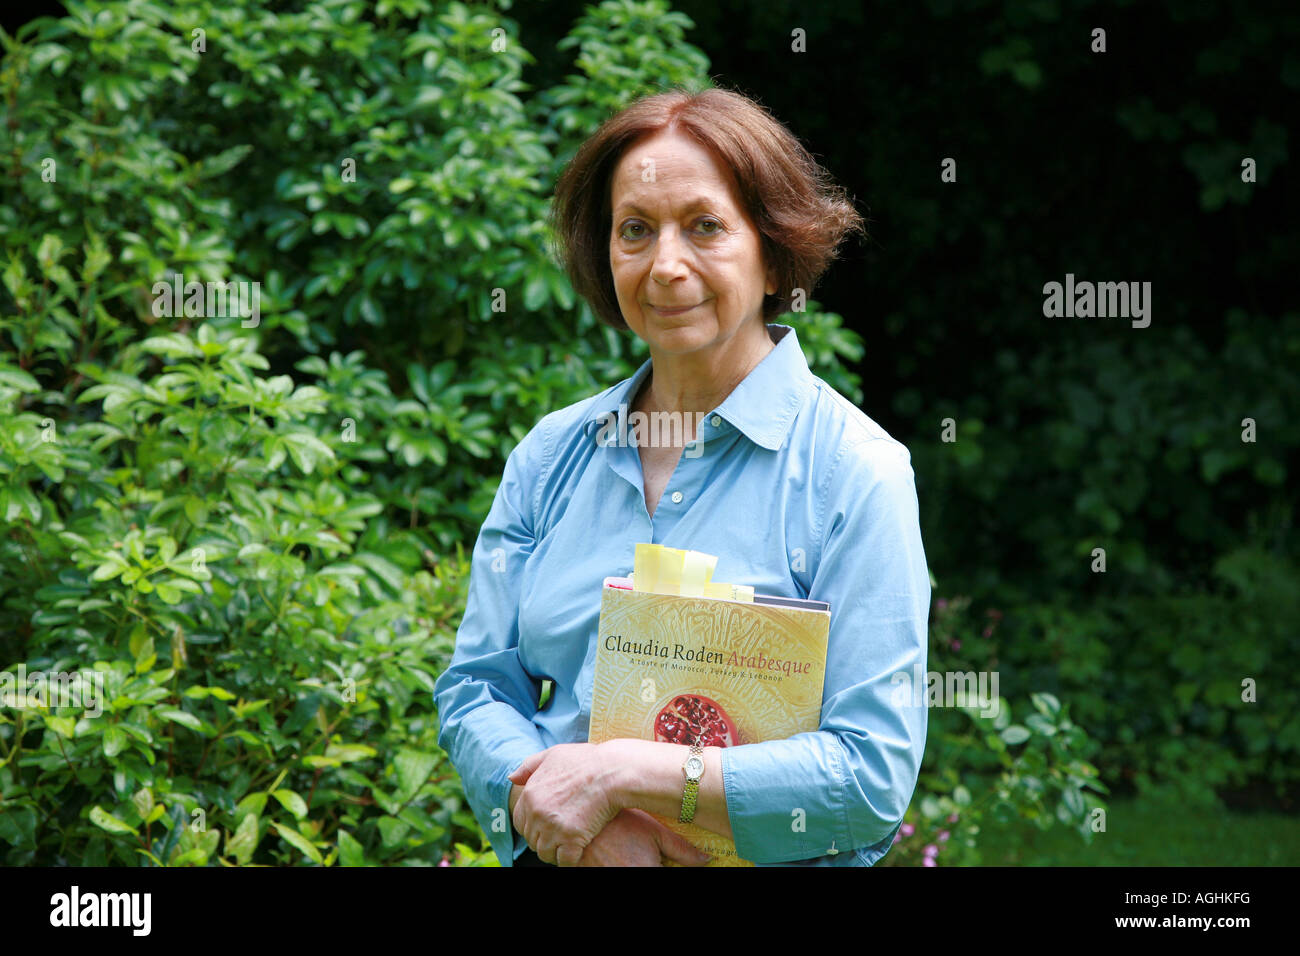 Claudia Roden dans son jardin Septembre 2007 Banque D'Images